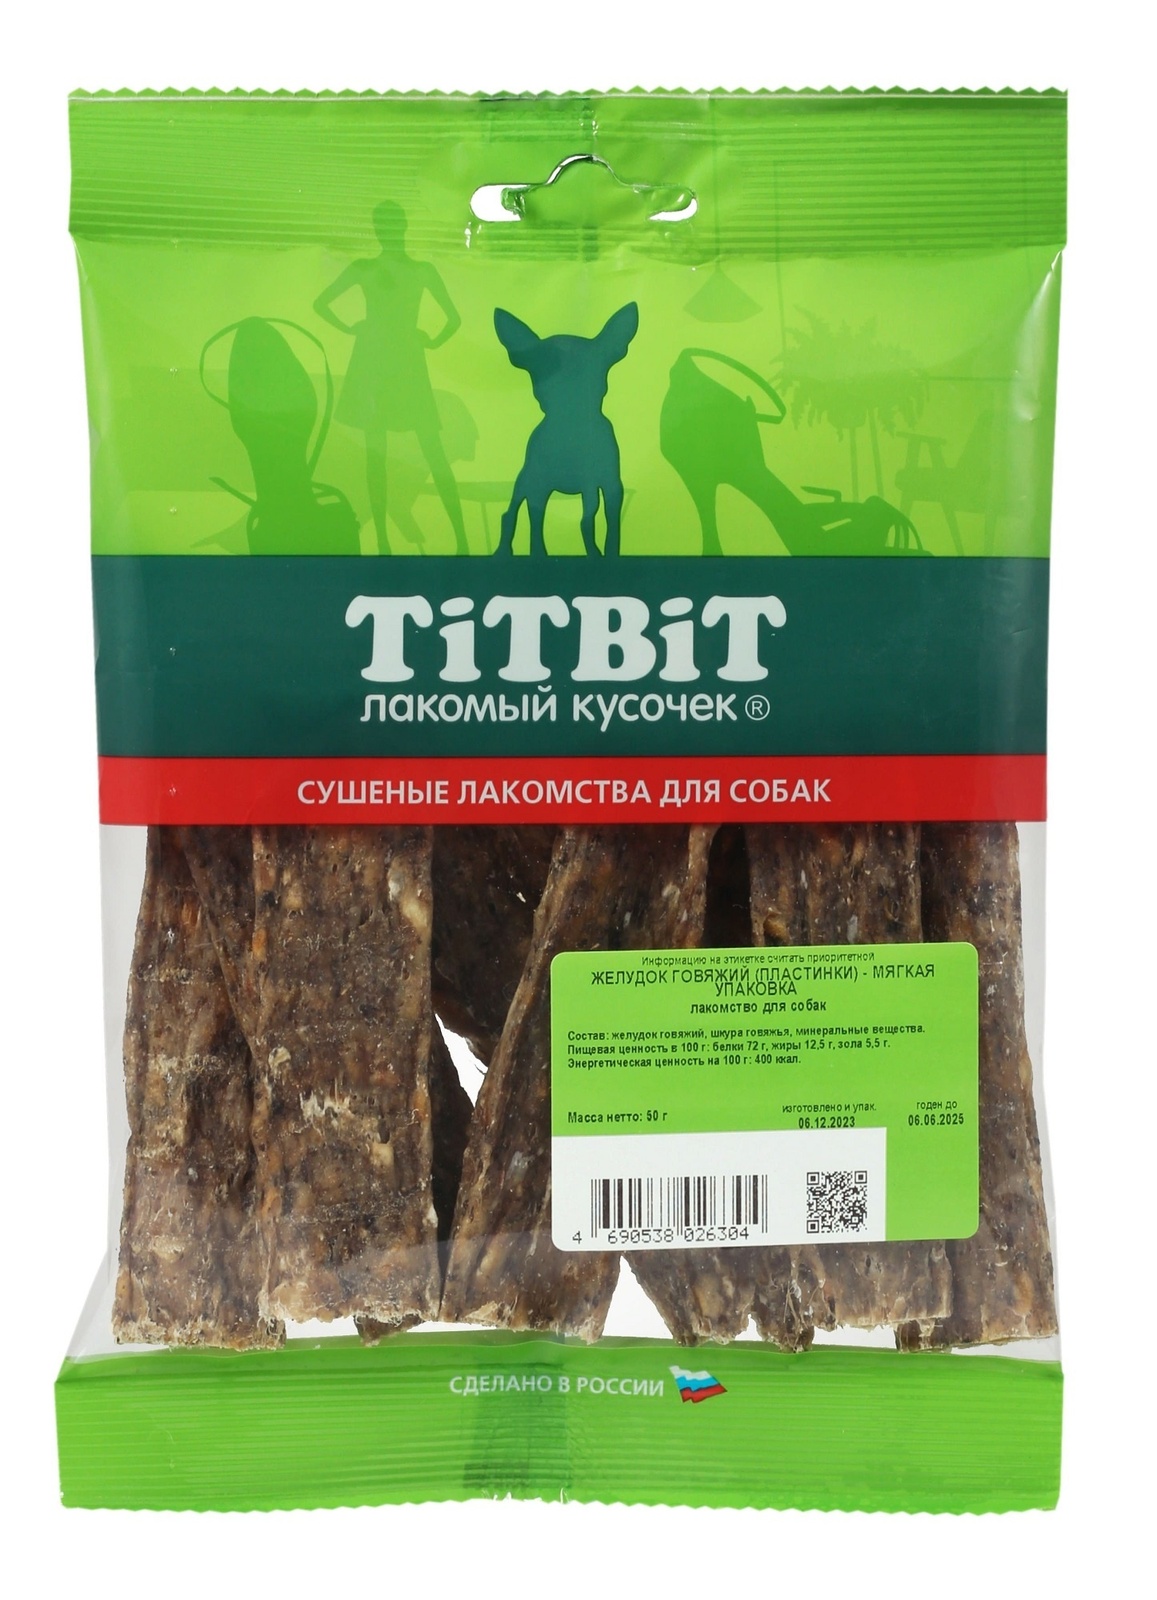 TiTBiT TiTBiT желудок говяжий (пластинки) - мягкая упаковка (50 г) titbit titbit желудок говяжий пластинки мягкая упаковка 50 г